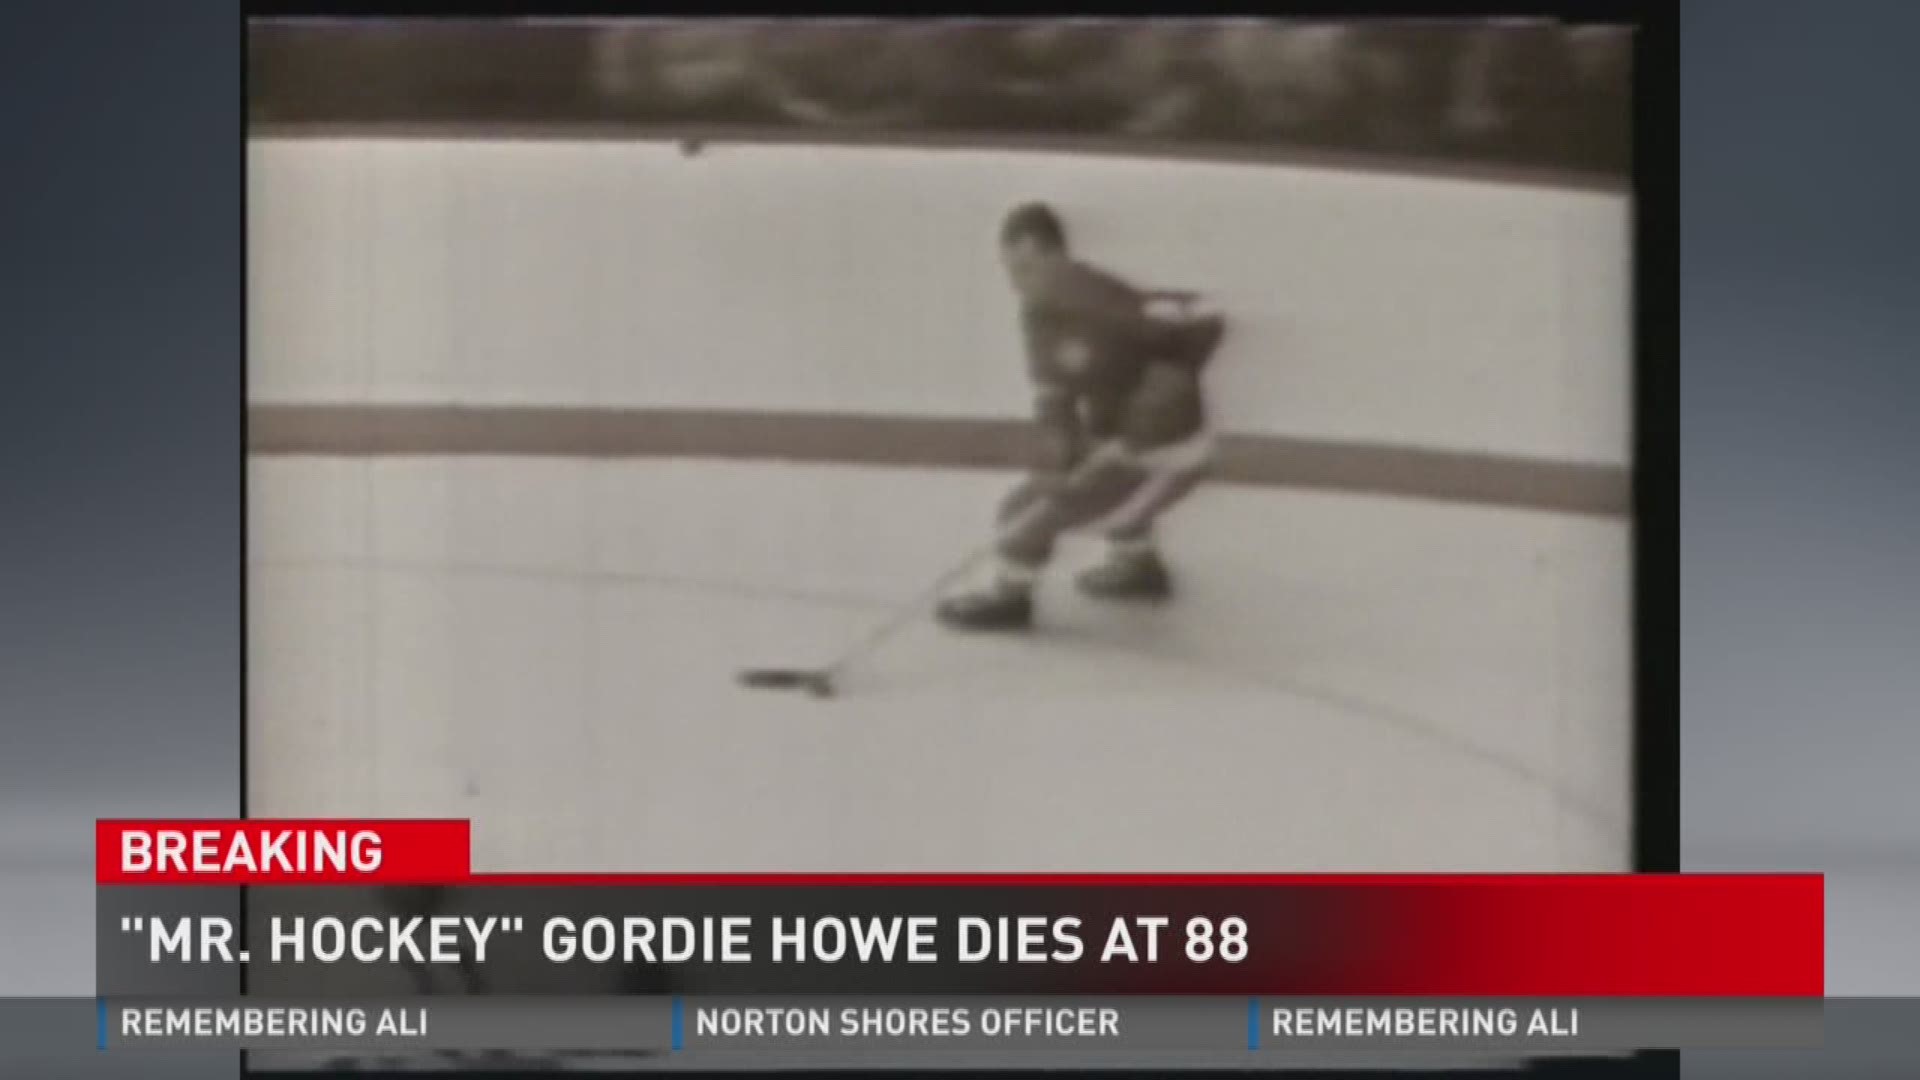 Mr. Hockey Gordie Howe dies at 88